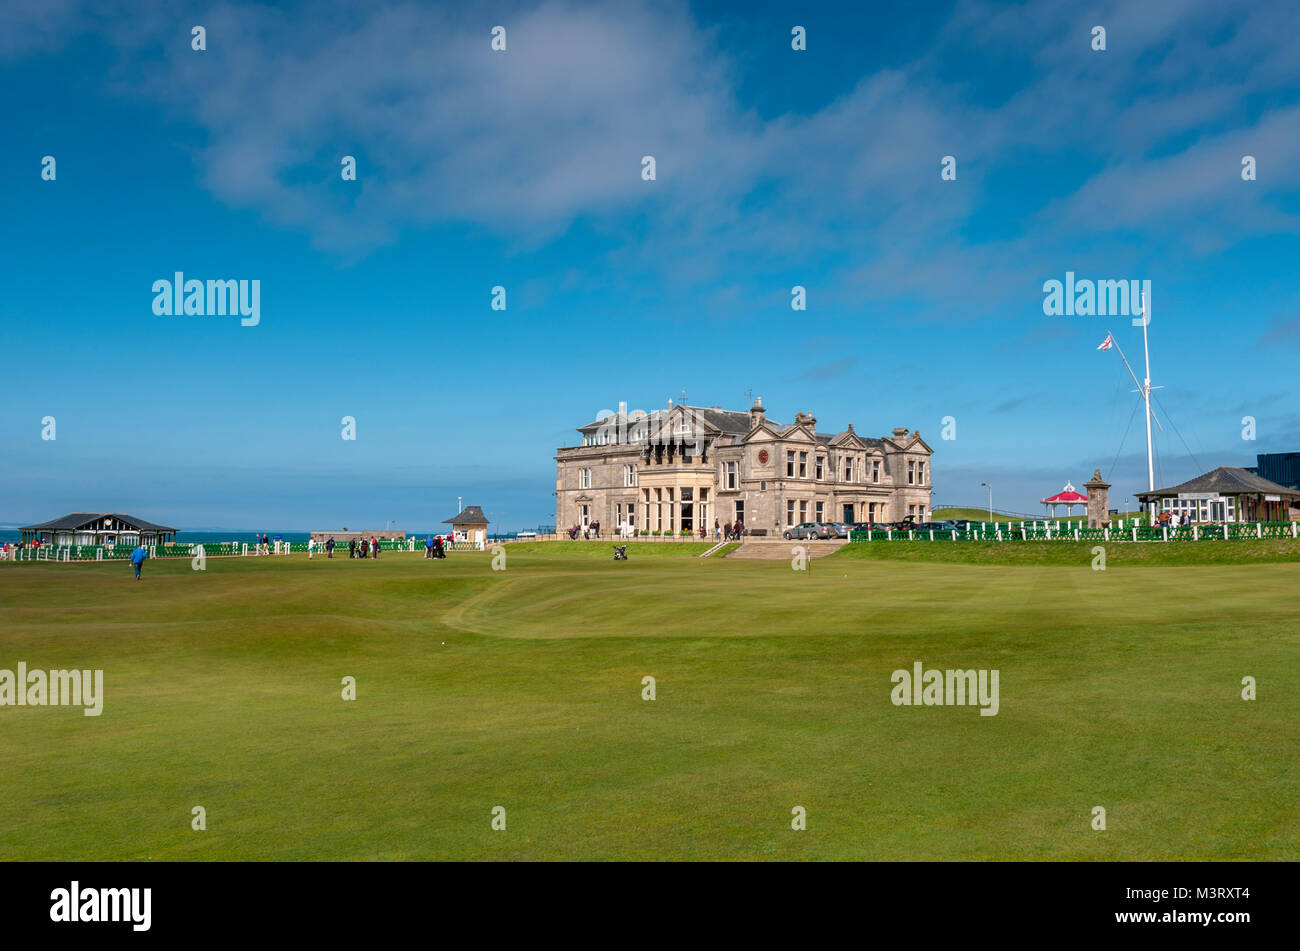 St andrews golf immagini e fotografie stock ad alta risoluzione - Alamy